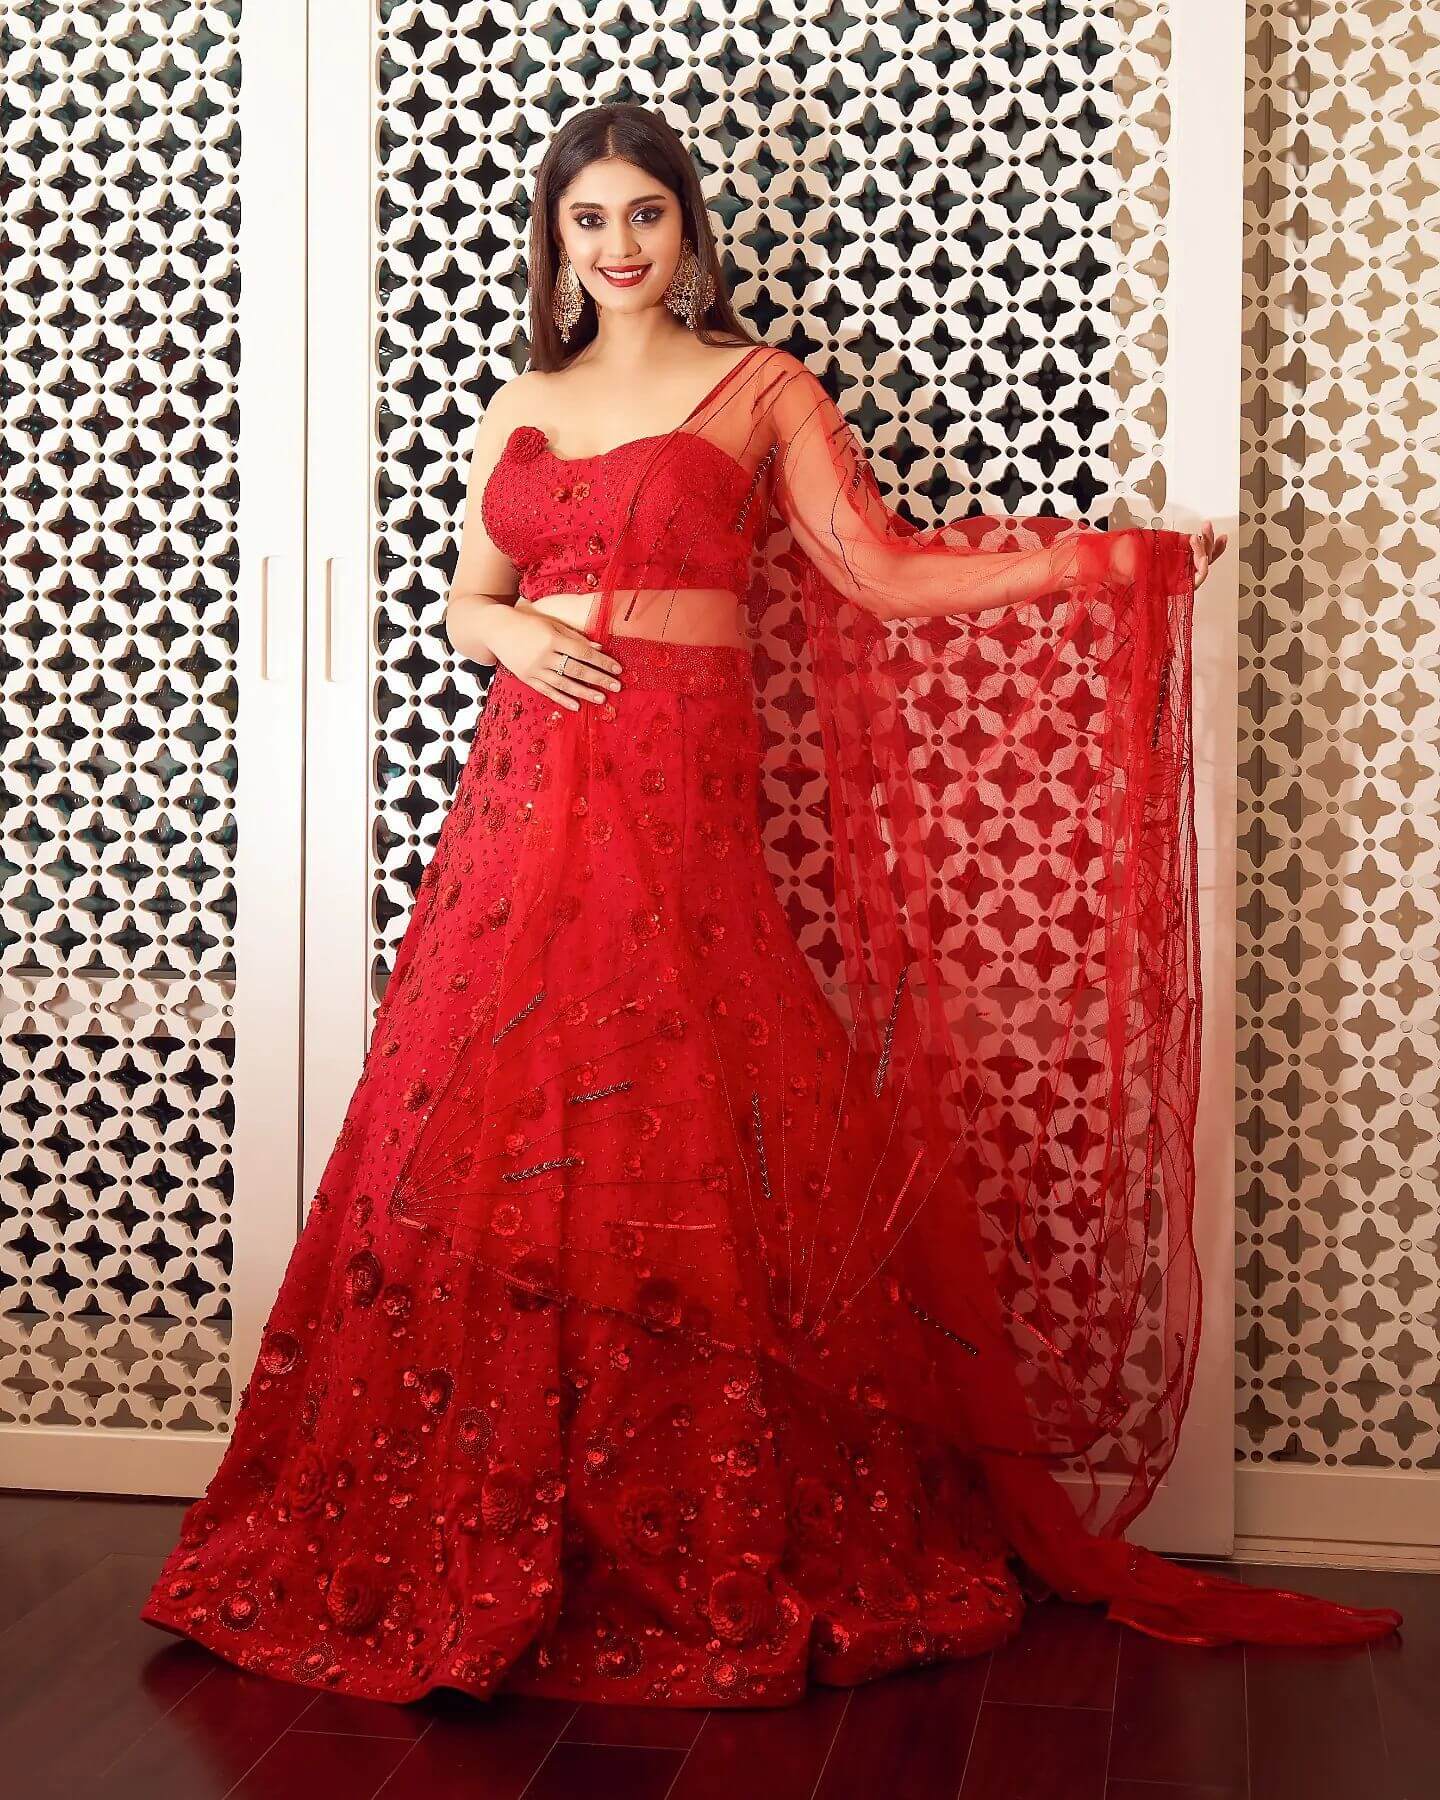 Surbhi Puranik Look Beautiful In Red Off-Shoulder Sweetheart Neck Lehenga